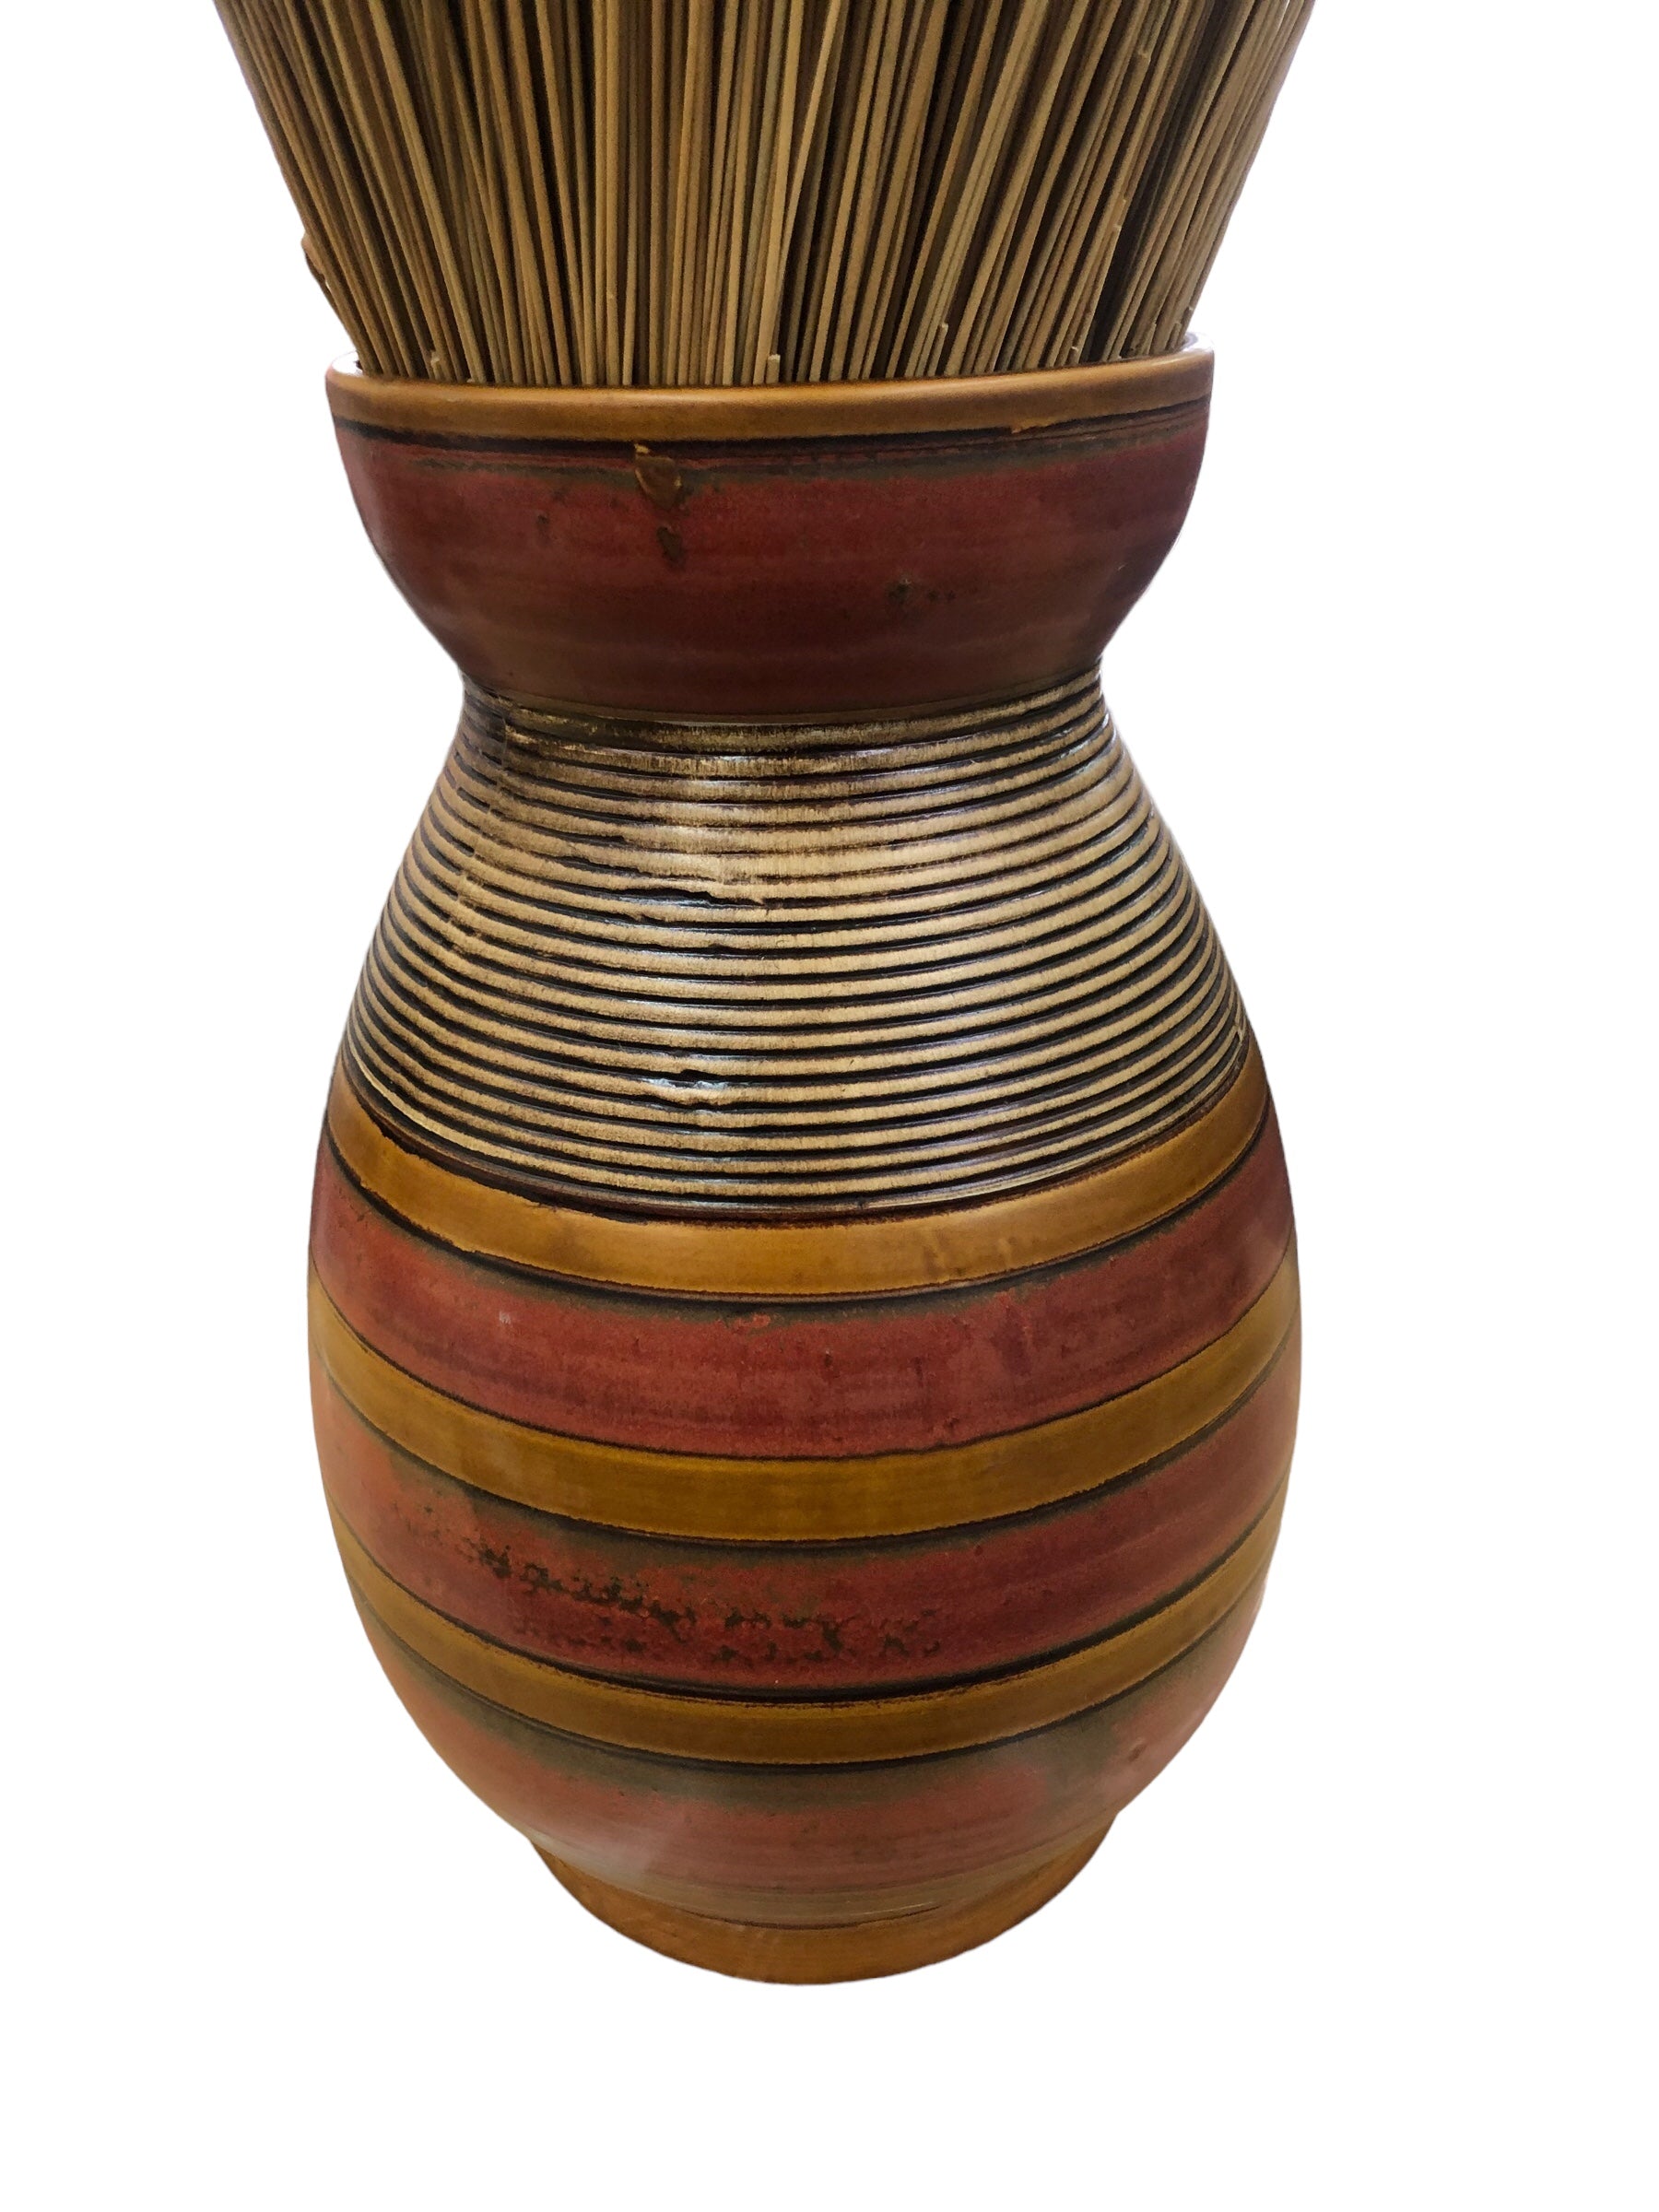 Ceramic Vase with sticks